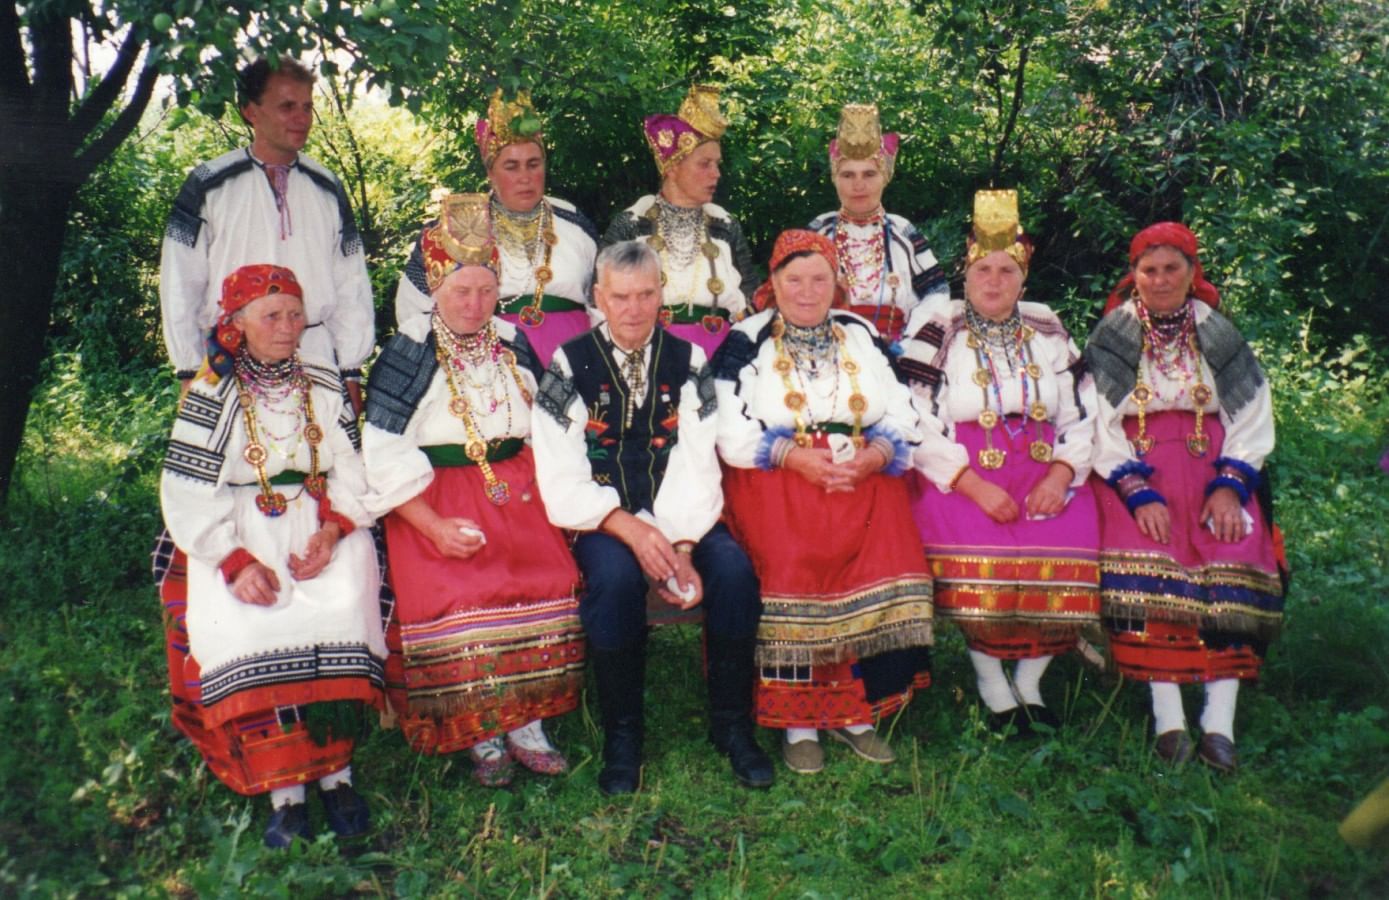 Село Афанасьевка славится песенными традициями и народным фольклорным коллективом, который создал любитель и знаток фольклора Сапелкин Ефим Тарасович.